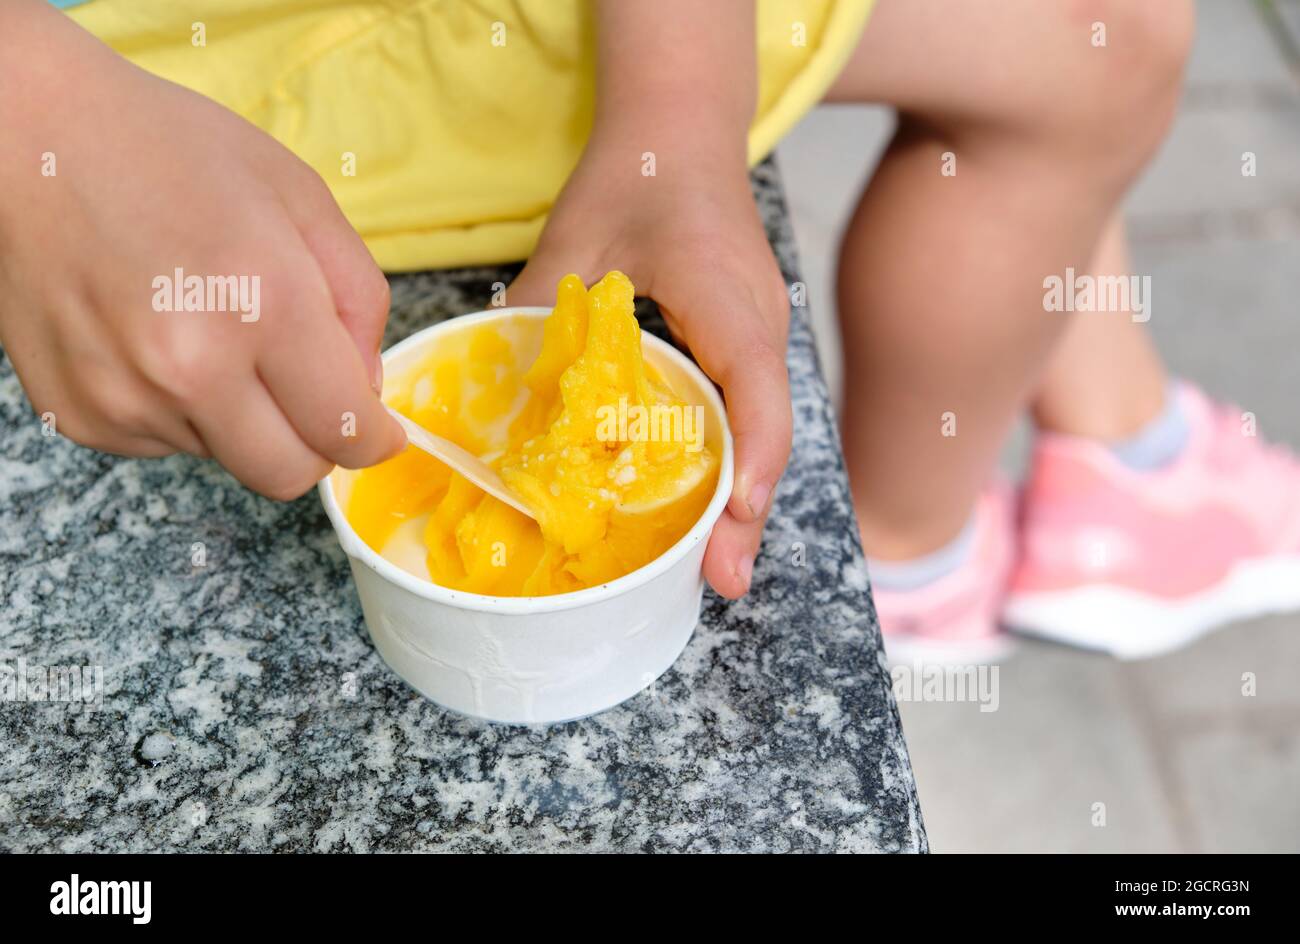 Primo piano di una bambina caucasica di 5 anni in abiti estivi seduto e mangiando gelato al mango giallo da una tazza. Visto in Germania nel mese di giugno Foto Stock